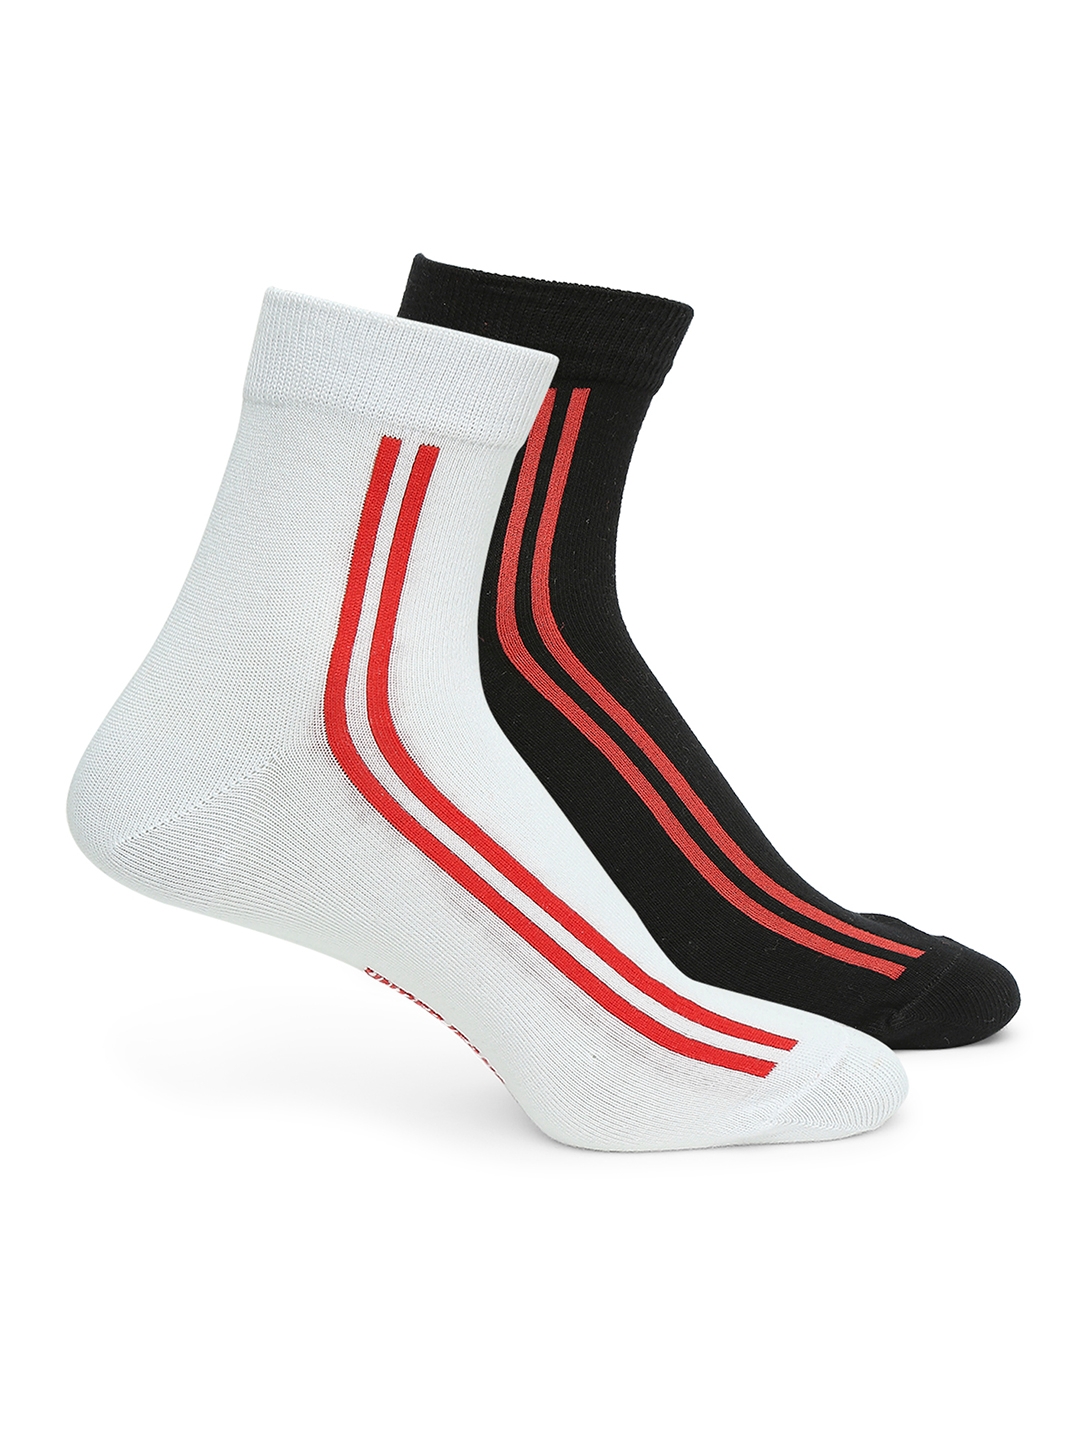 Underjeans by Spykar Premium White & Black Ankle Length Socks - Pack Of 2